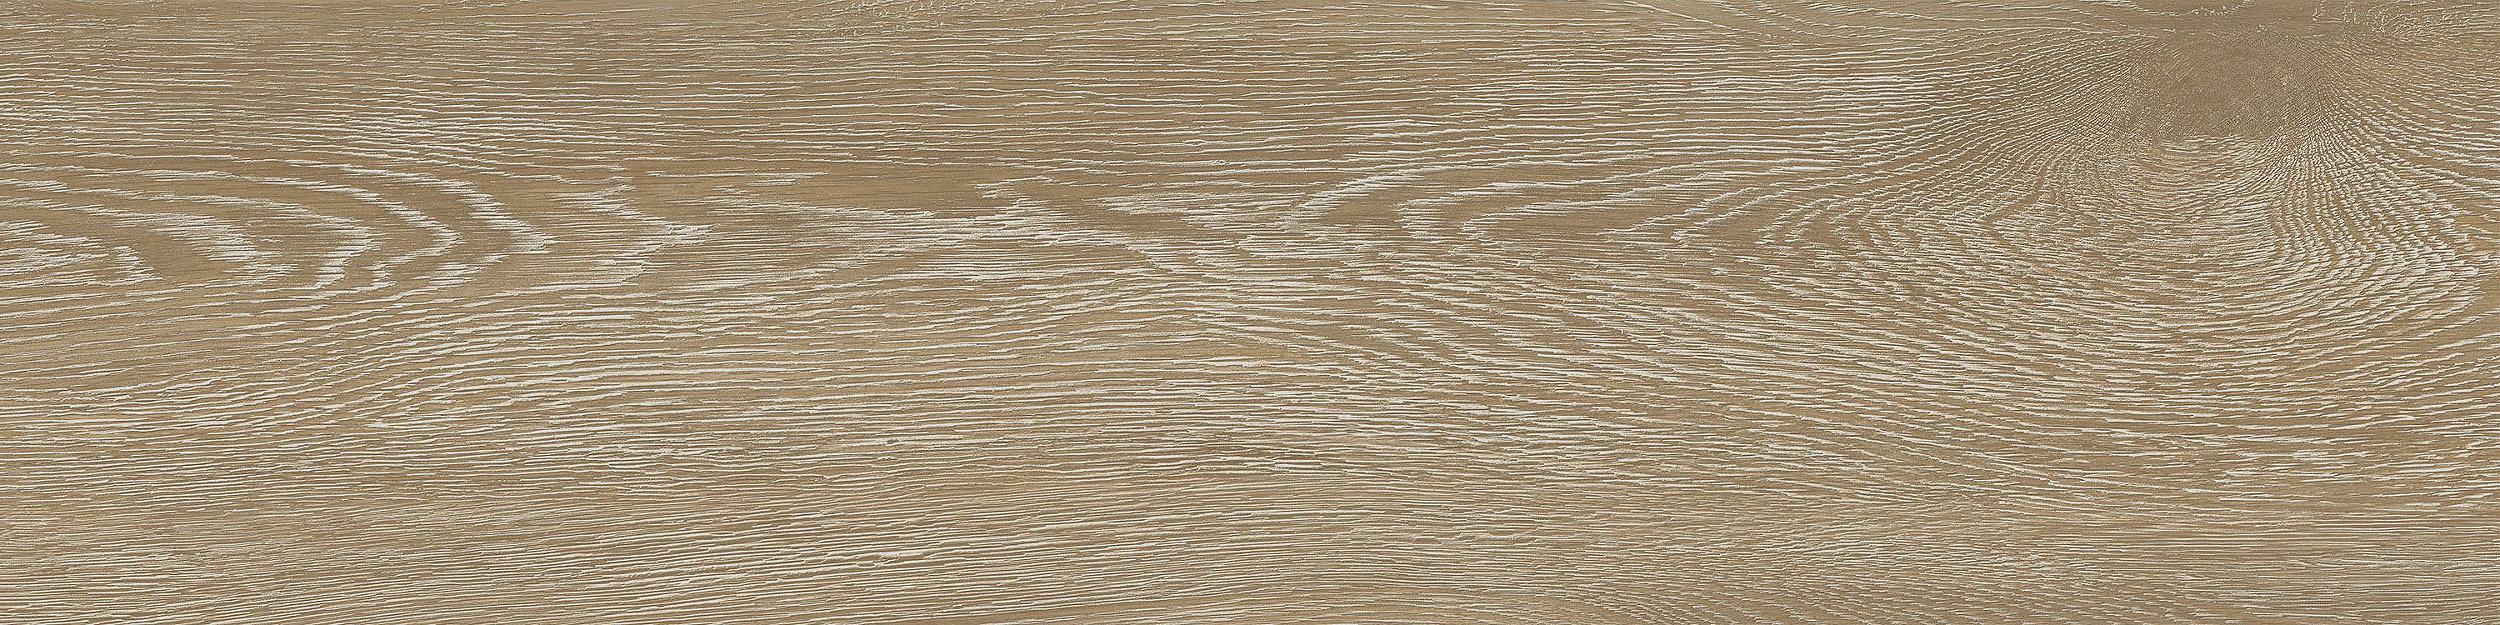 Textured Woodgrains LVT In Antique Light Oak image number 11